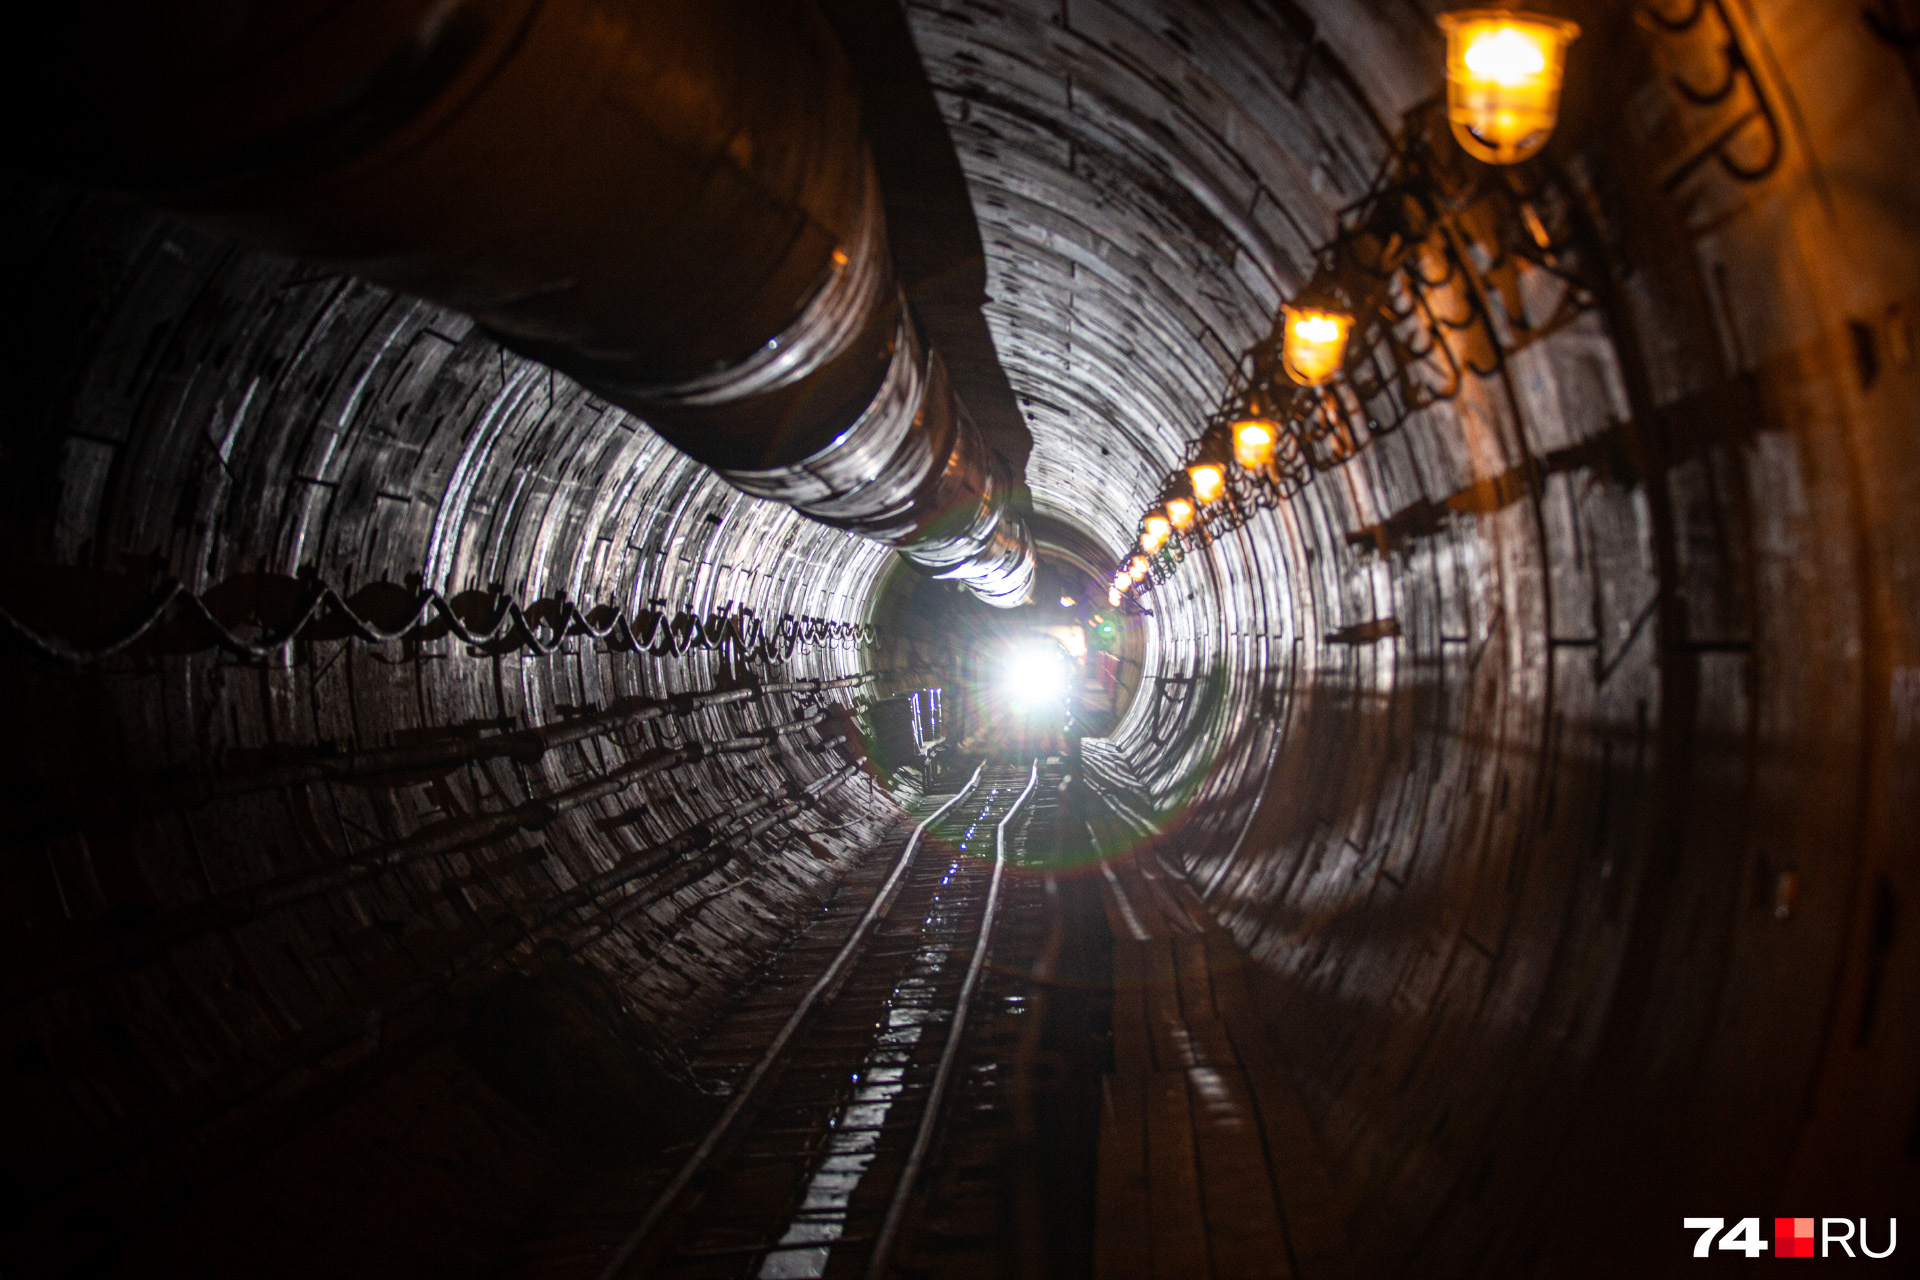 А вы верите в свет в конце тоннеля челябинского метро?